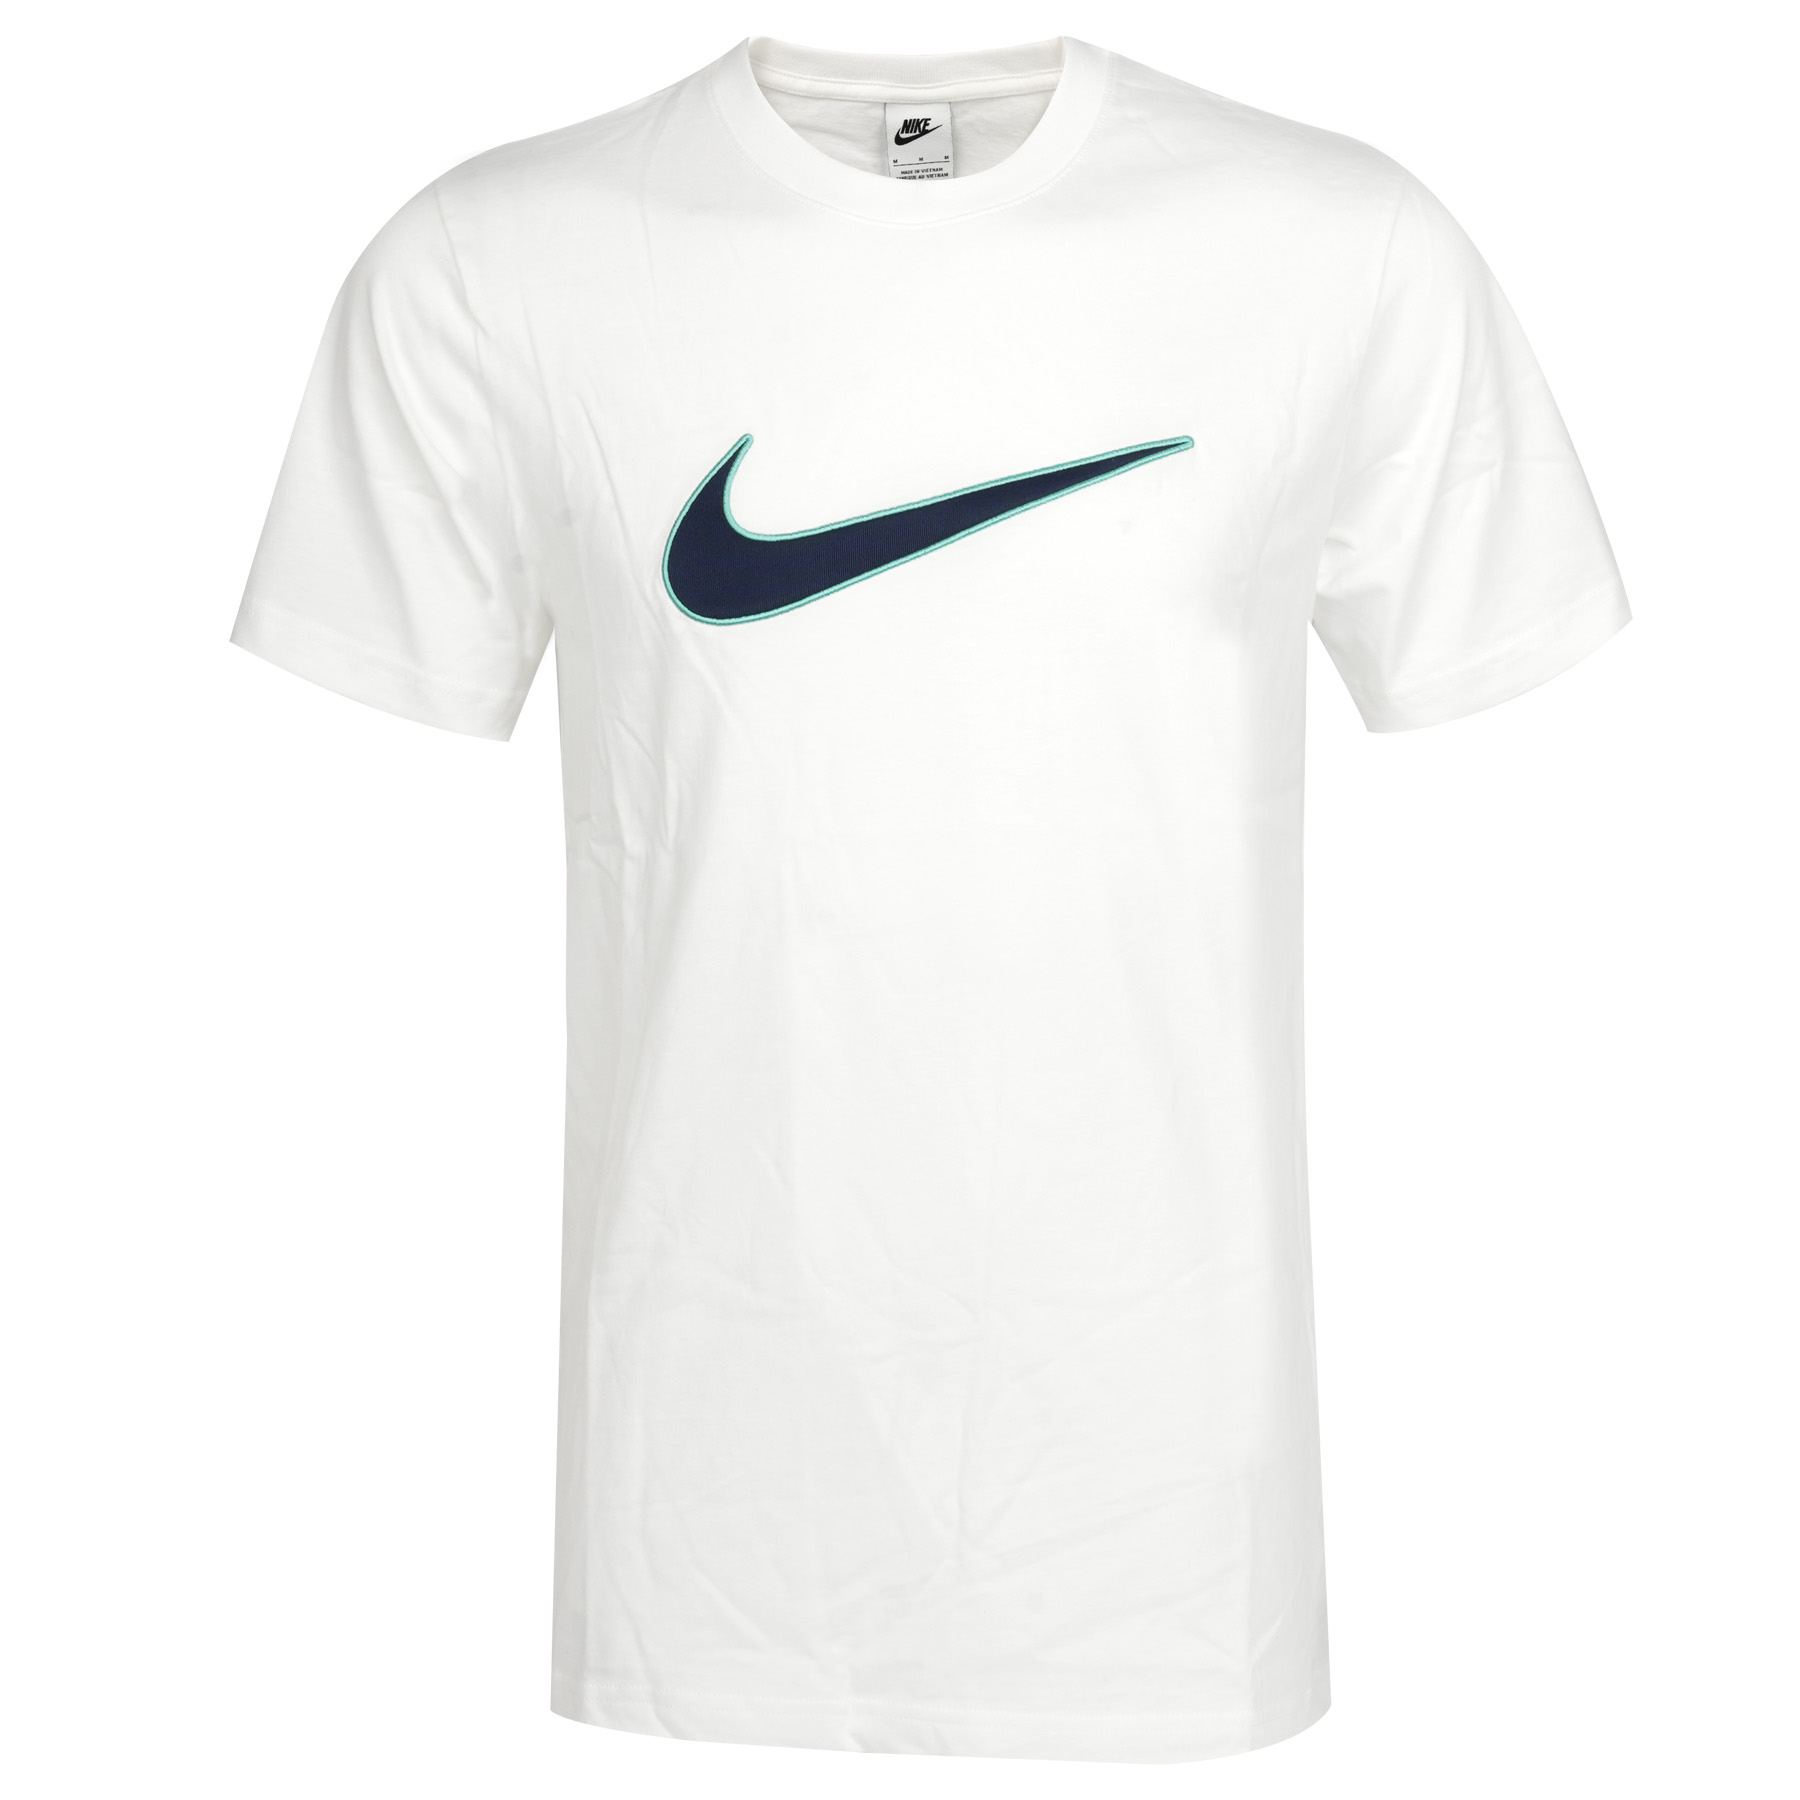 Produktbild von Nike Sportswear T-Shirt Herren - white/hyper FN0248-101